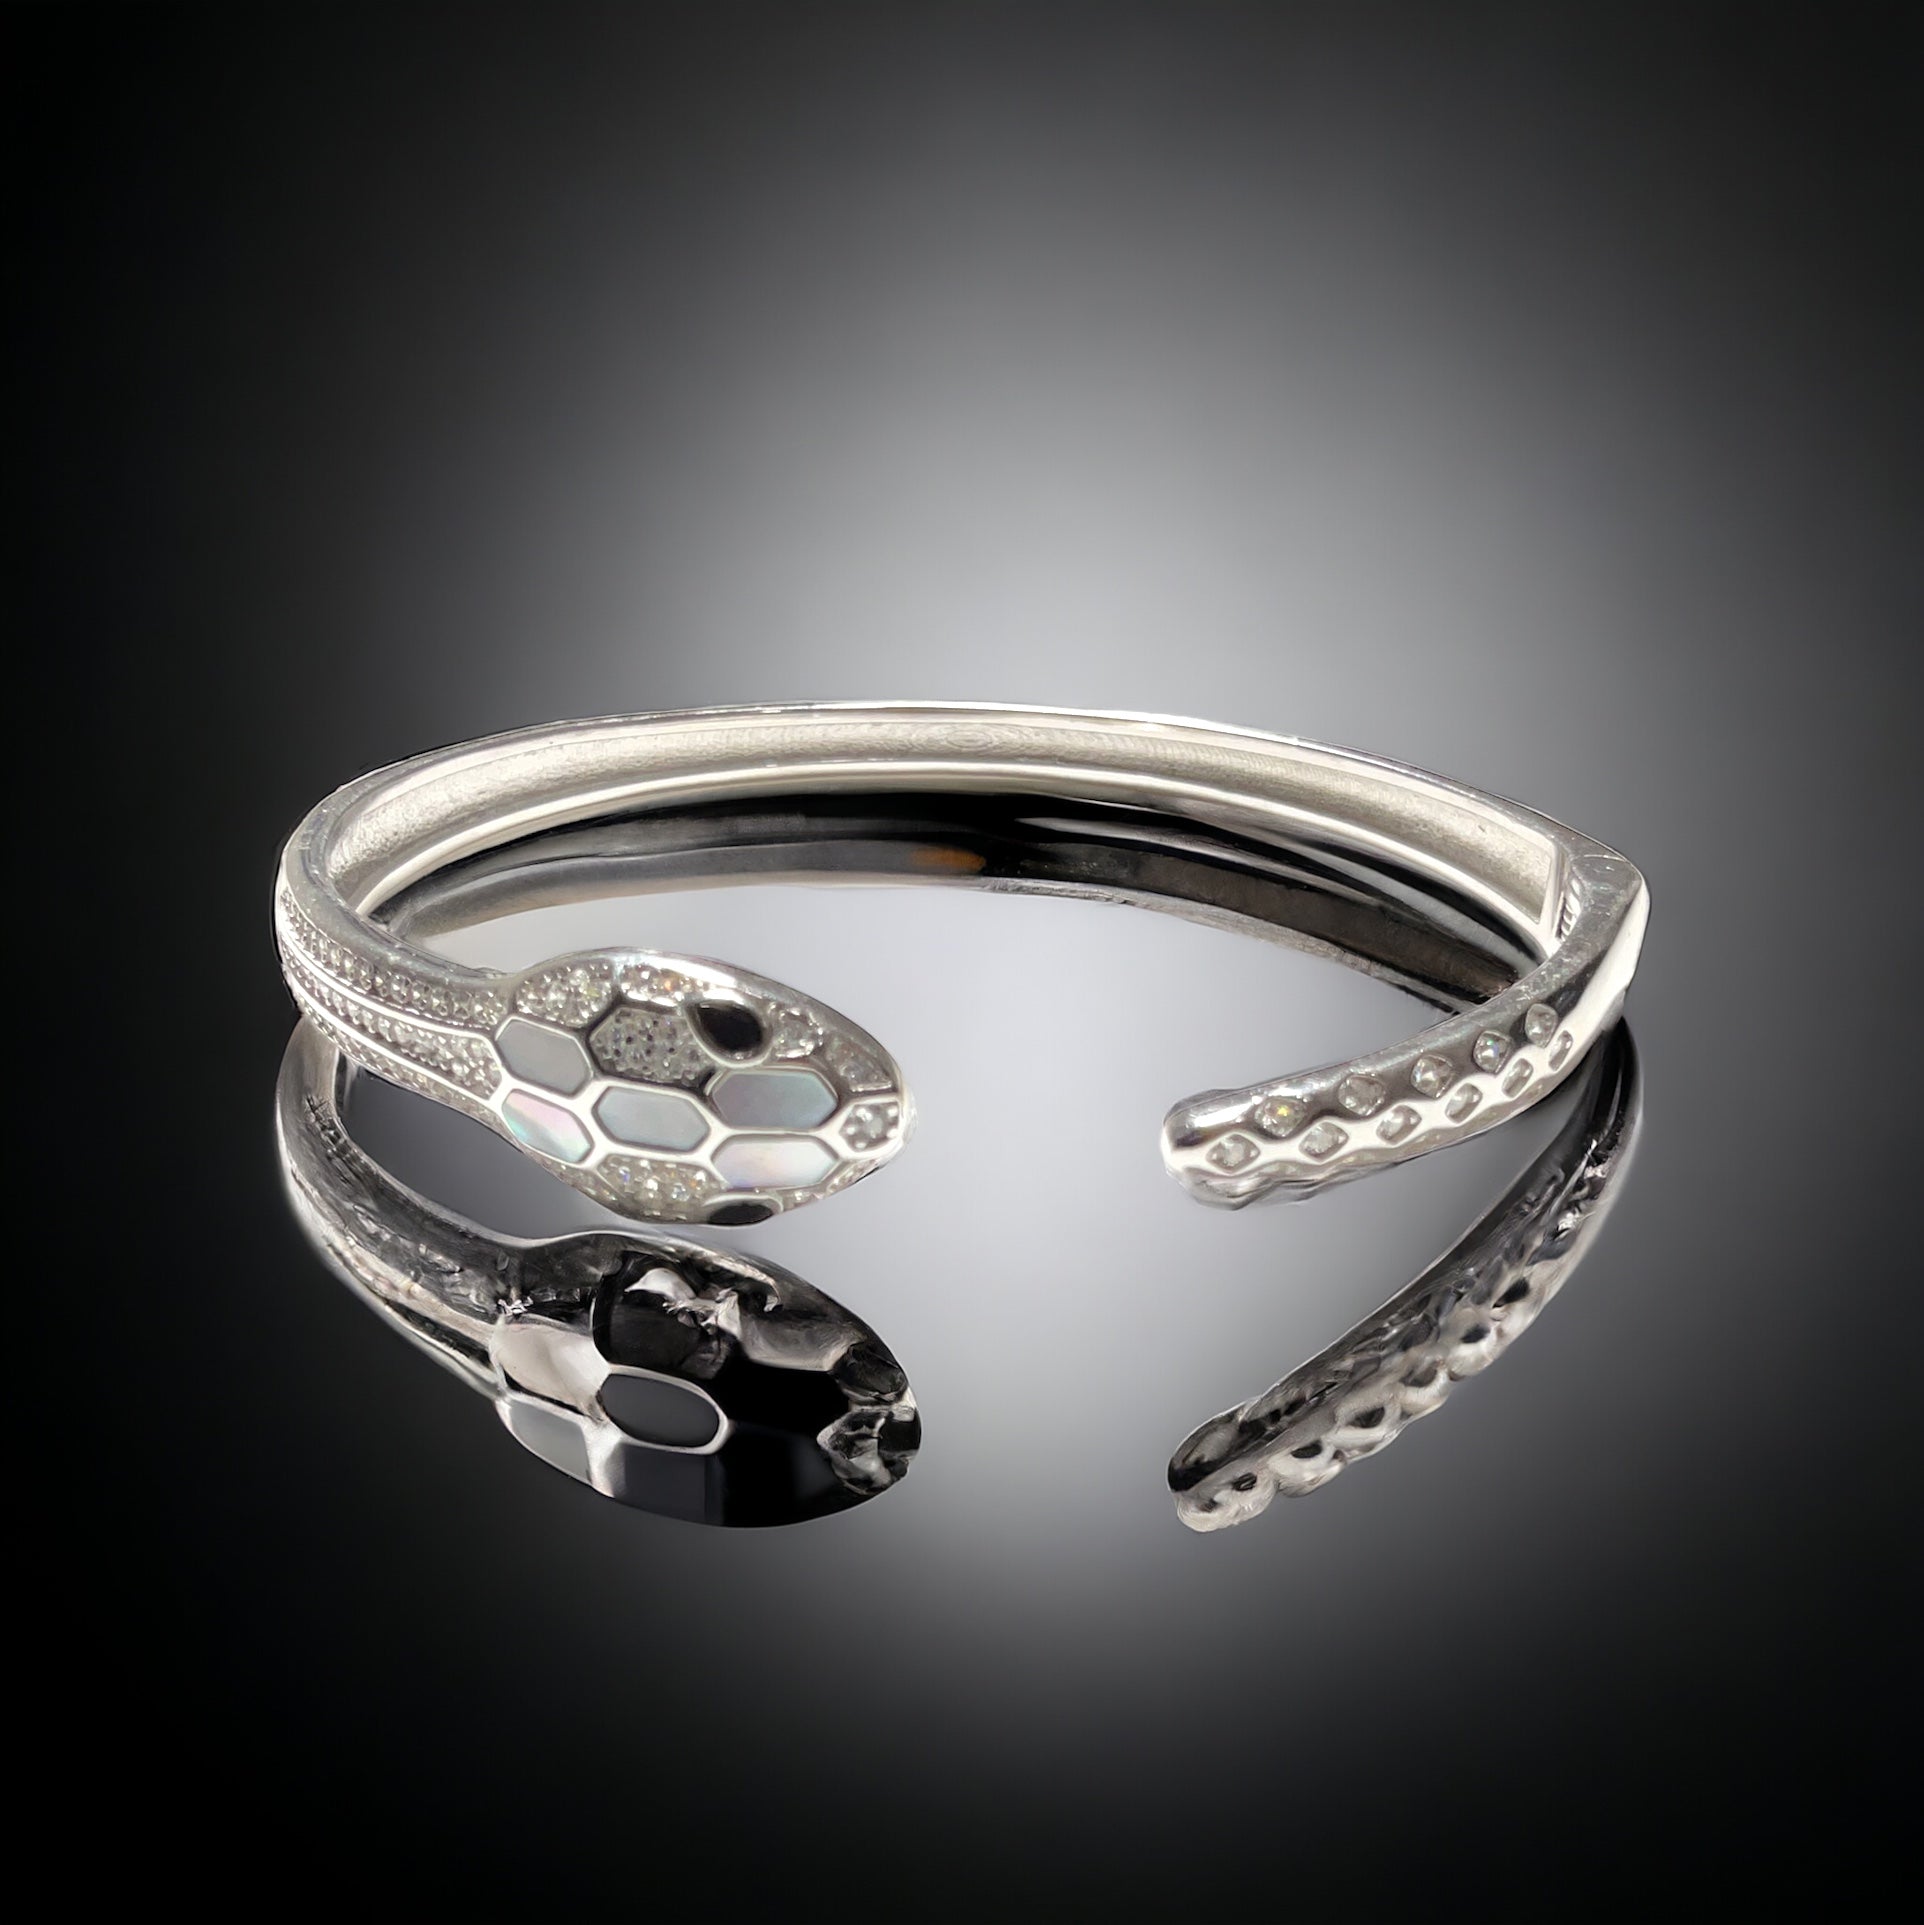 a silver bracelet with a snake design on it